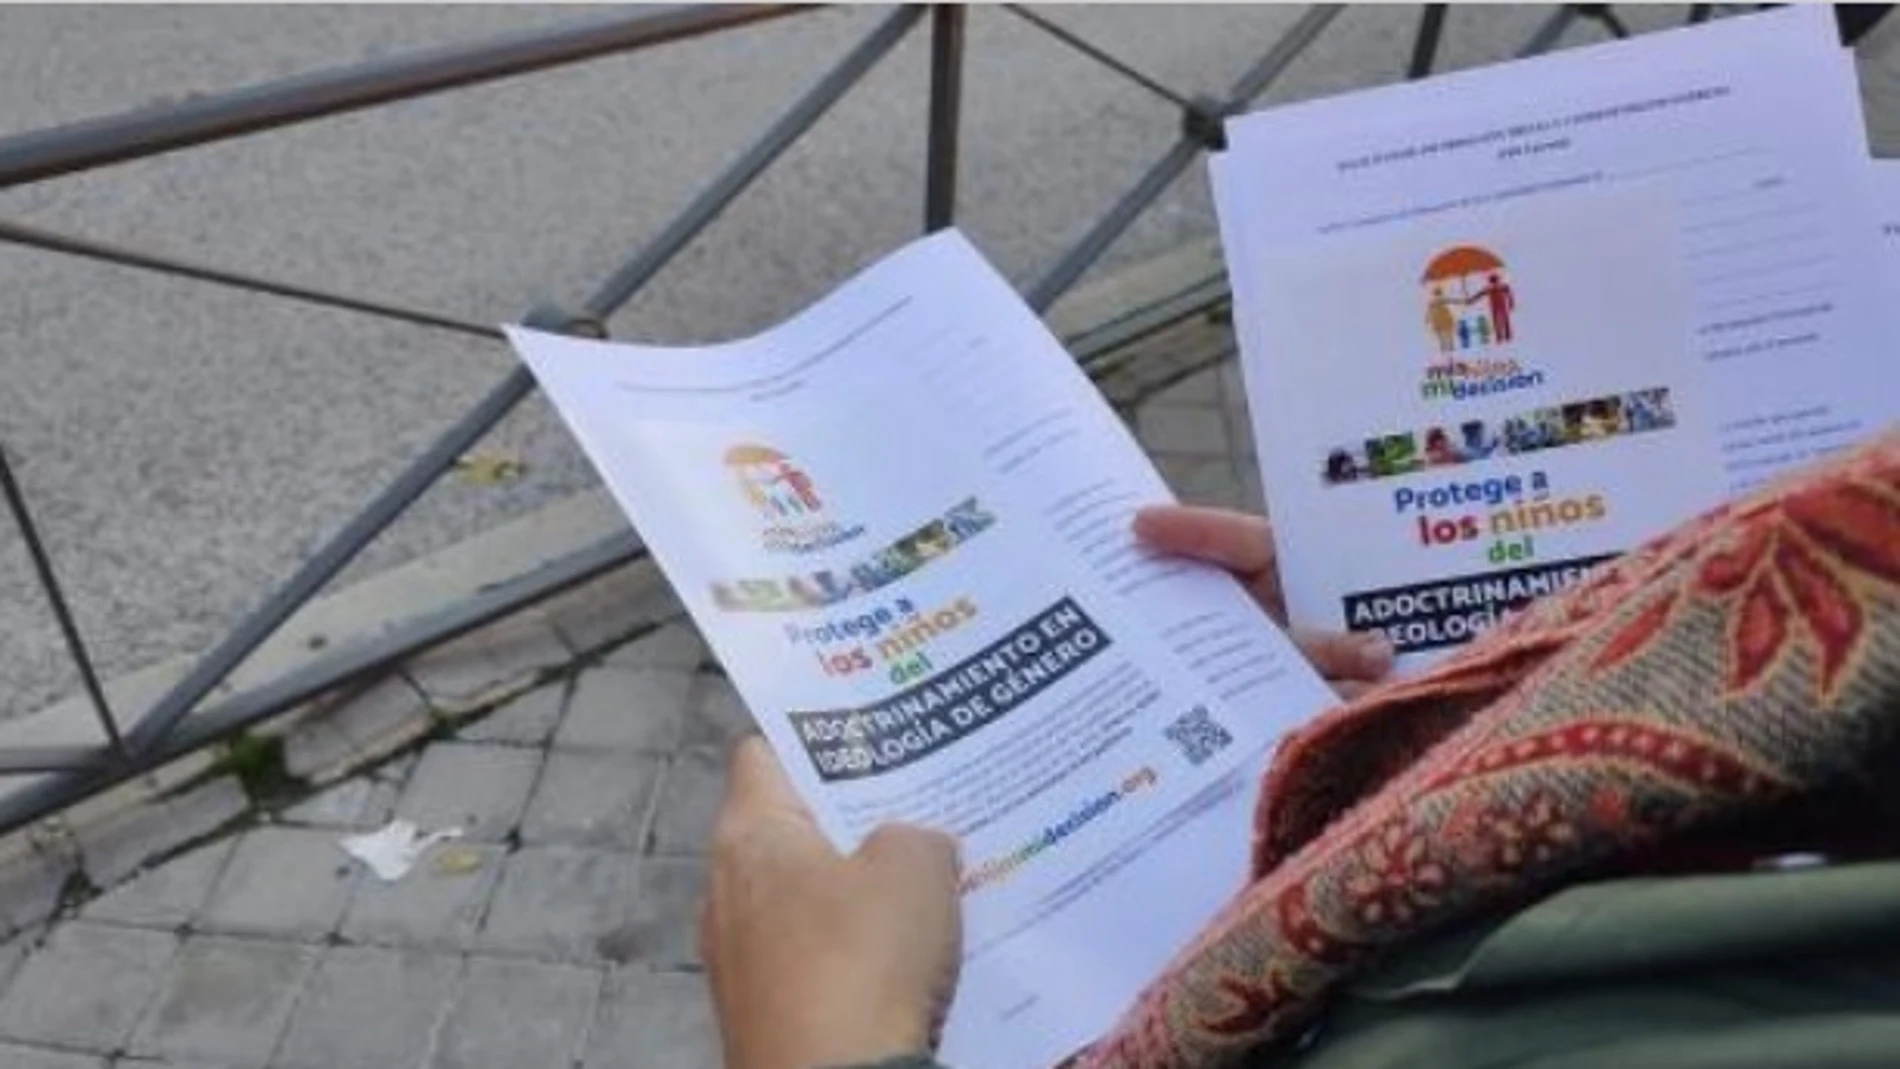 Hazte Oír repartirá mañana el 'pin parental' frente a colegio de Leganés para poner "fin al adoctrinamiento de género"